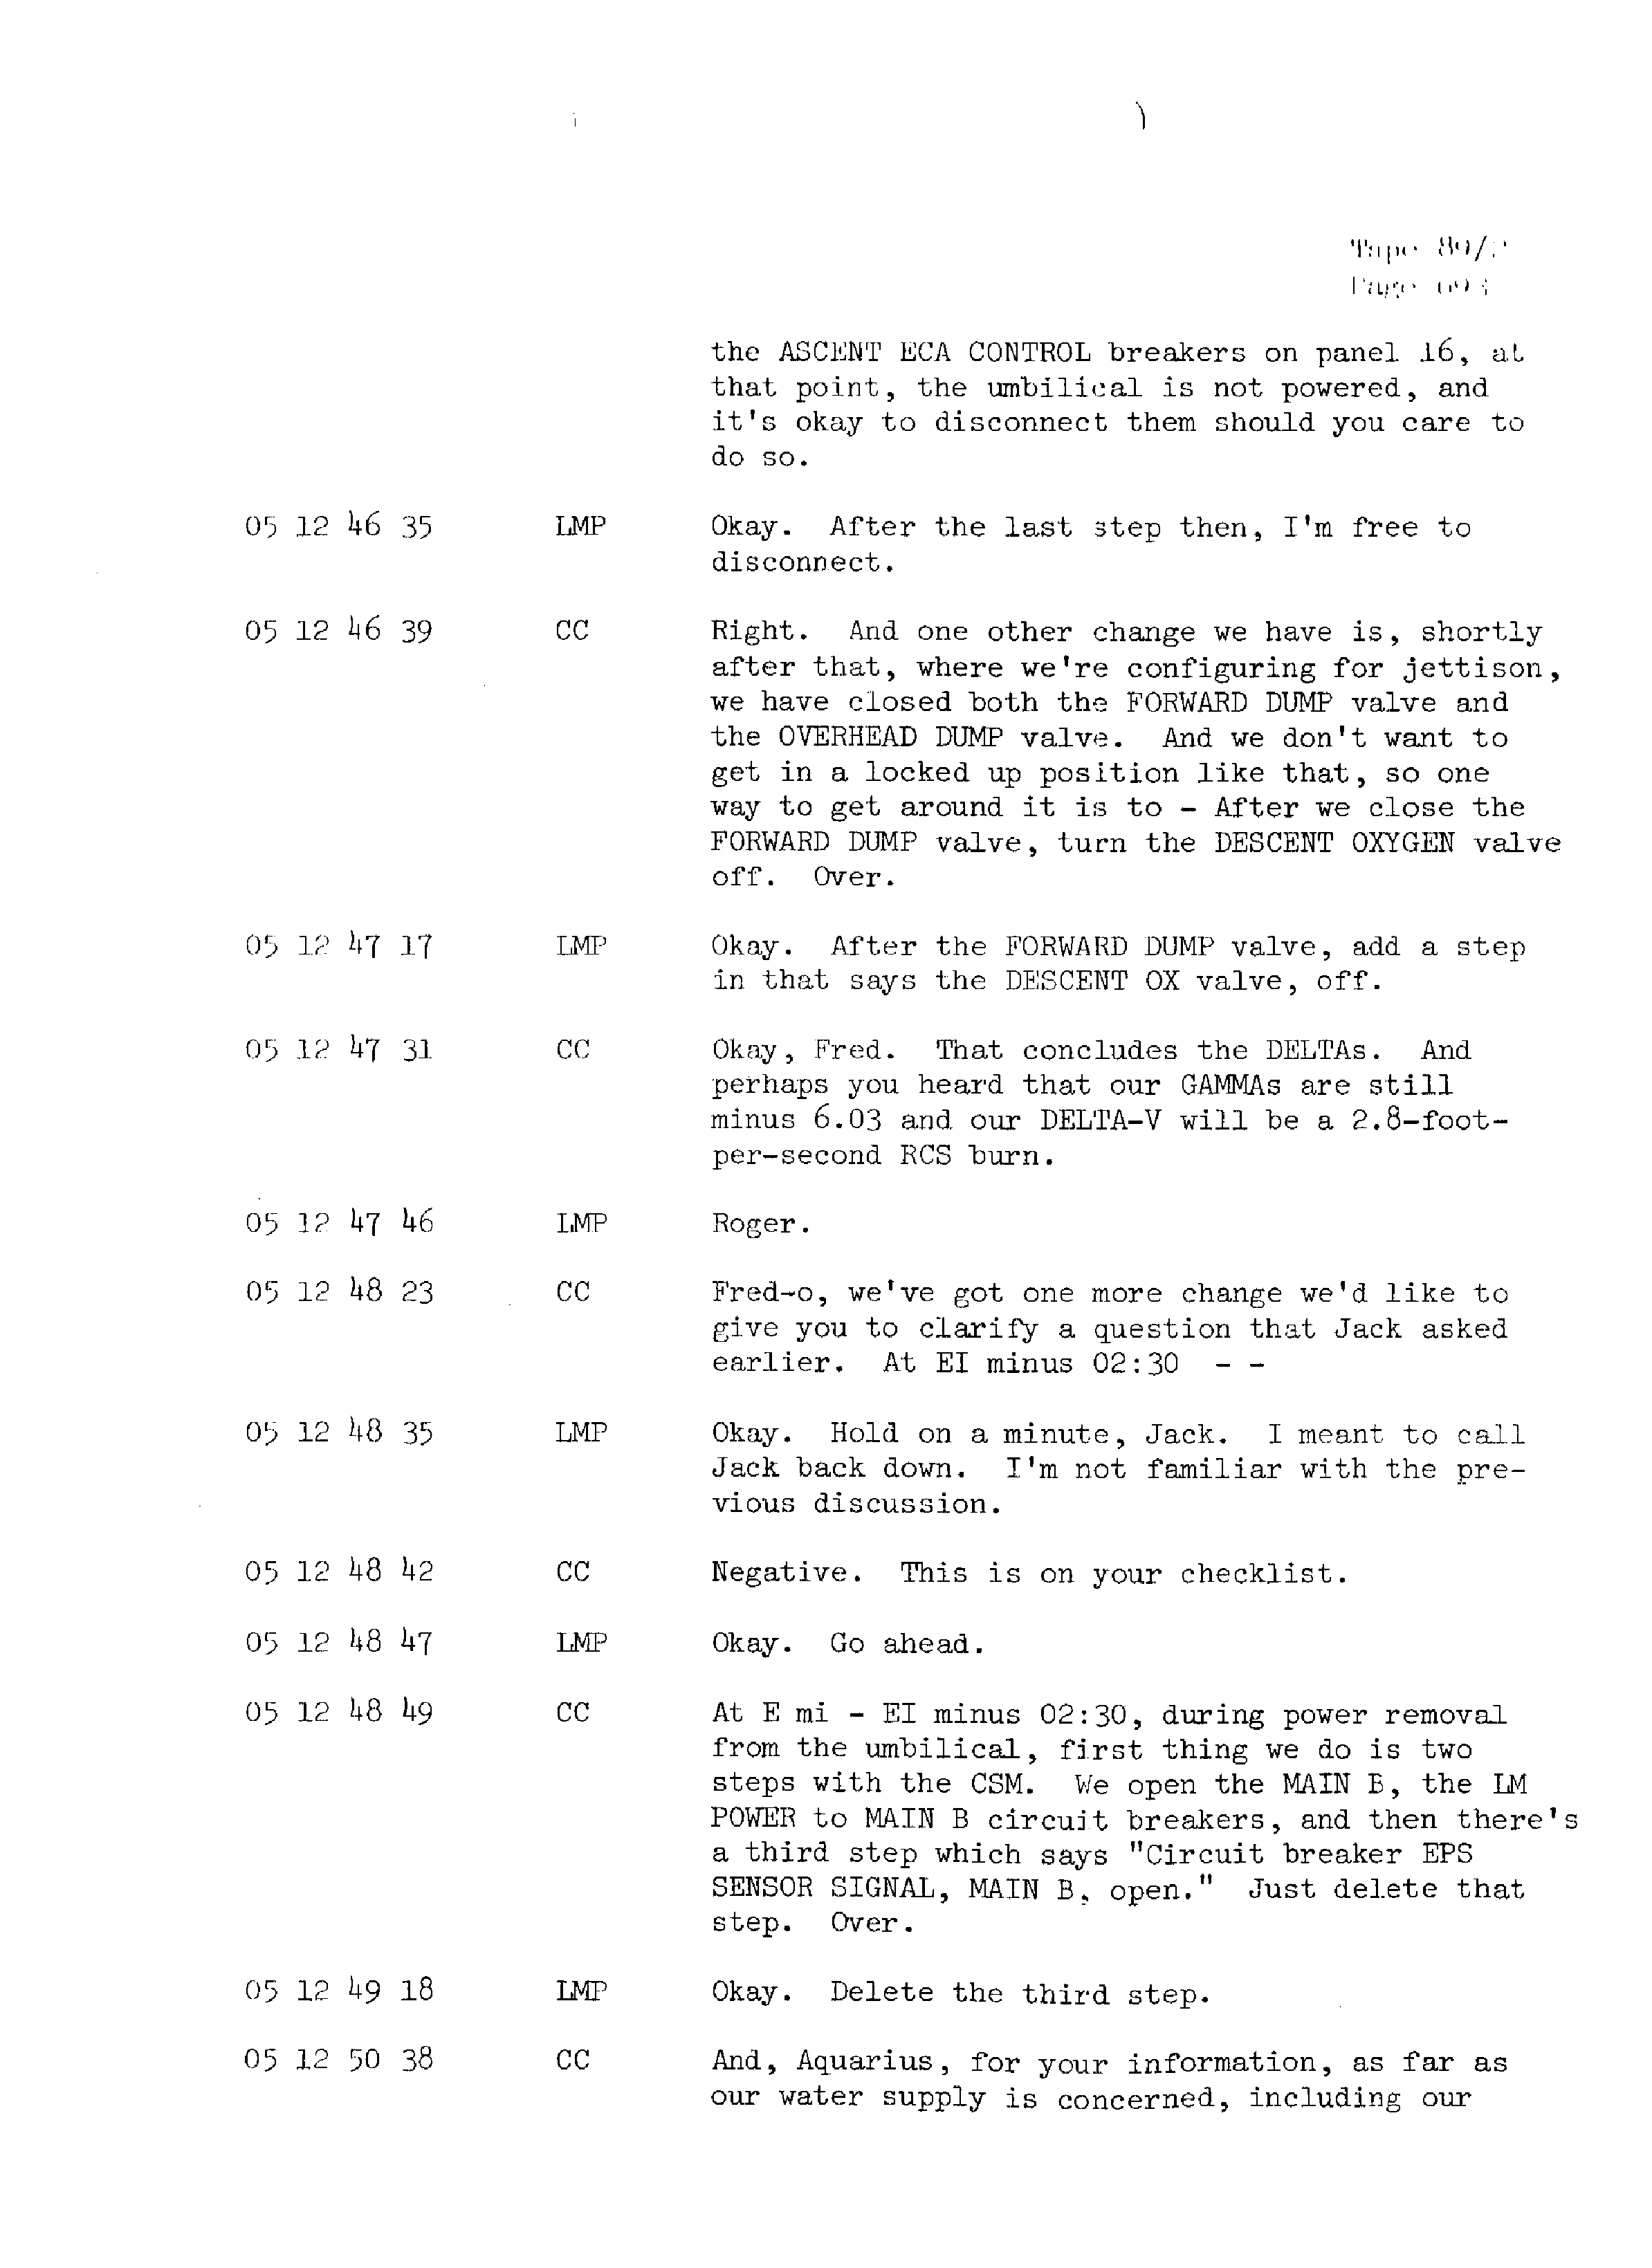 Page 700 of Apollo 13’s original transcript